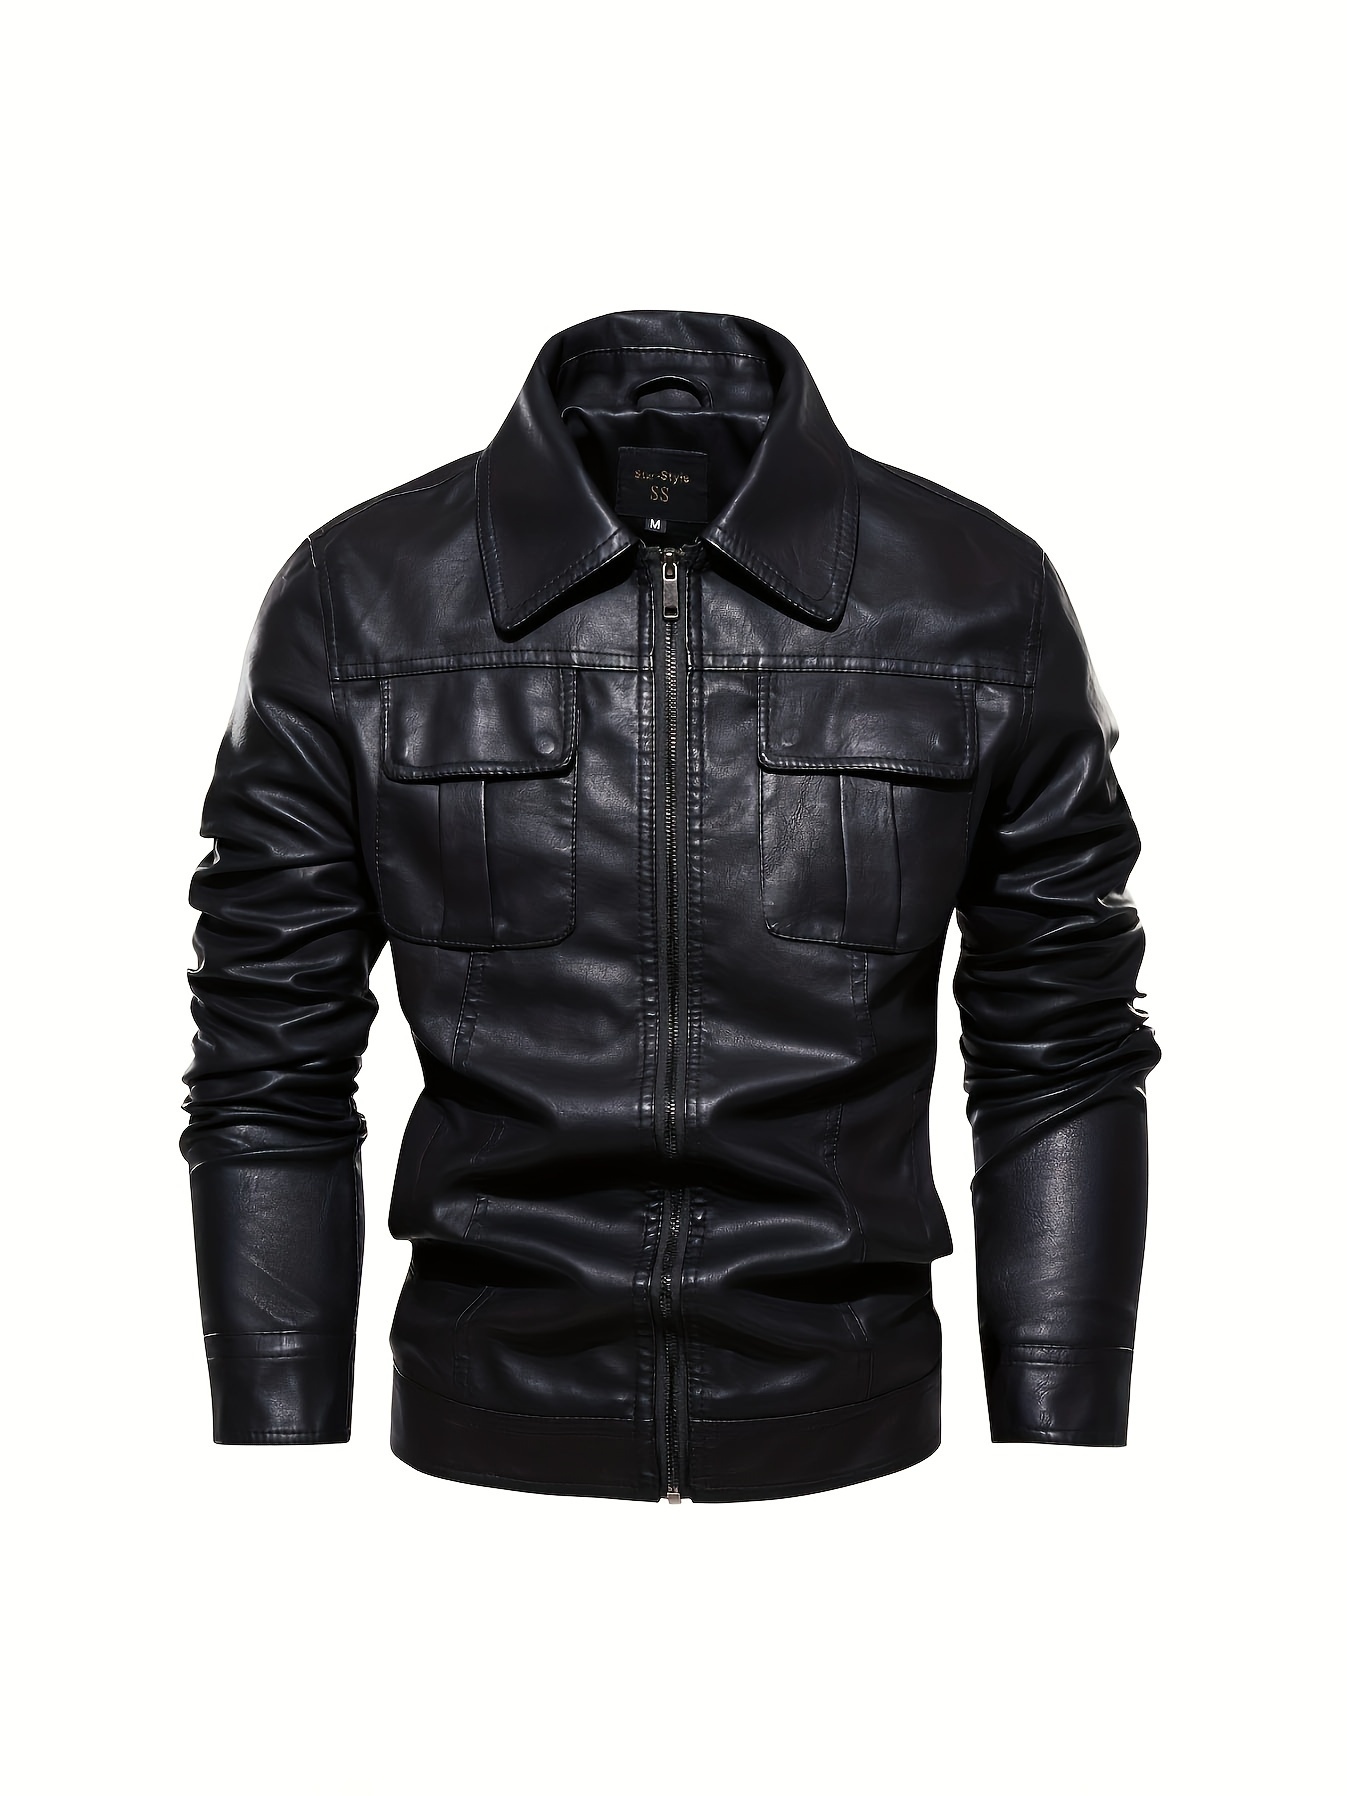 Dealer Chaleco para hombre de motocicleta negro actualizado SWAT Team Style  Textile Club con ajuste de cuero